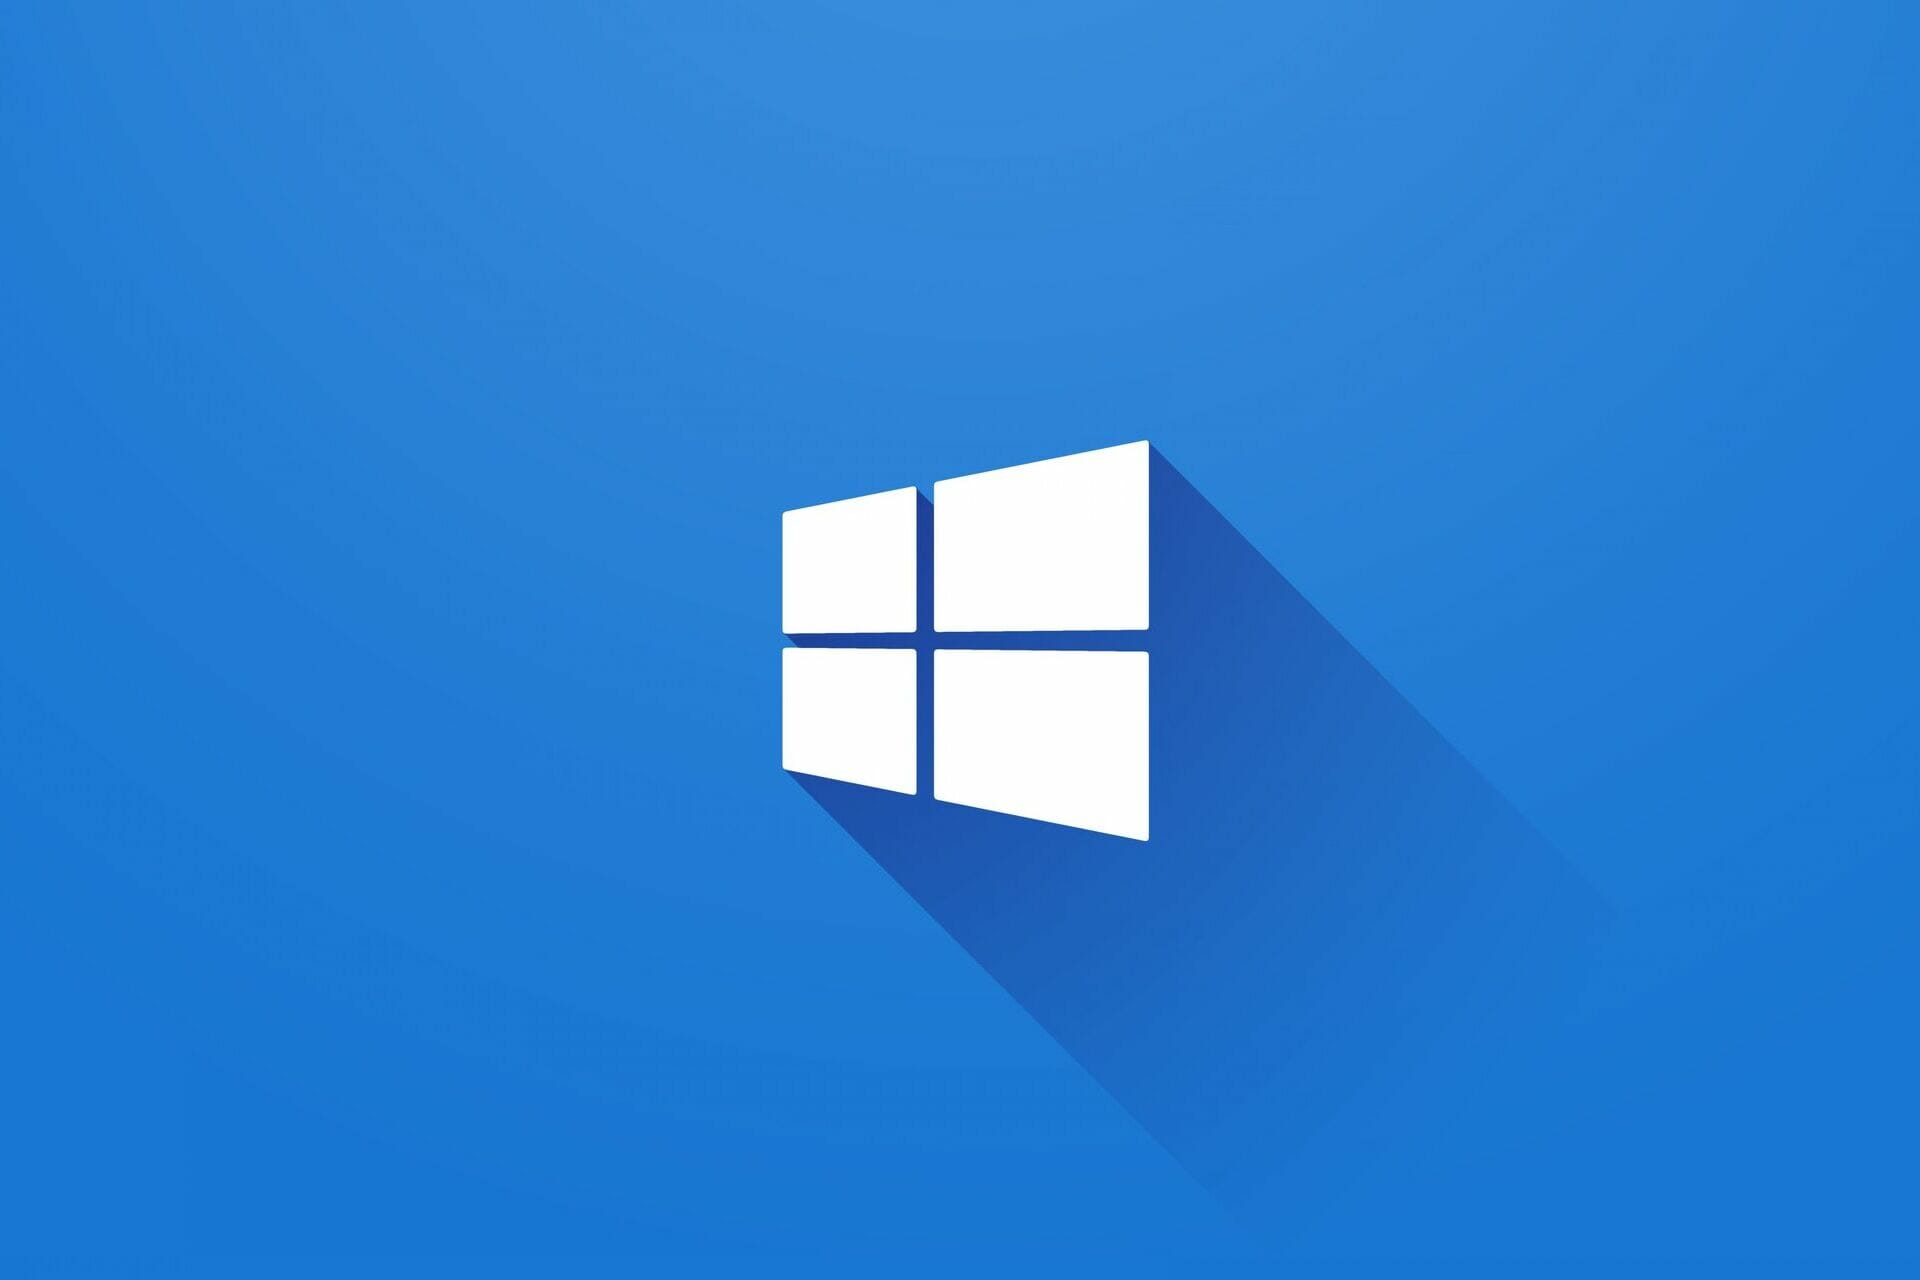 Bạn muốn tắt tiếng đối với một ứng dụng trên Windows 10 mà không cần phải tắt âm thanh toàn bộ máy tính? Hãy xem ngay hướng dẫn nhanh trong hình ảnh liên quan để tìm hiểu cách thực hiện một cách dễ dàng và nhanh chóng!